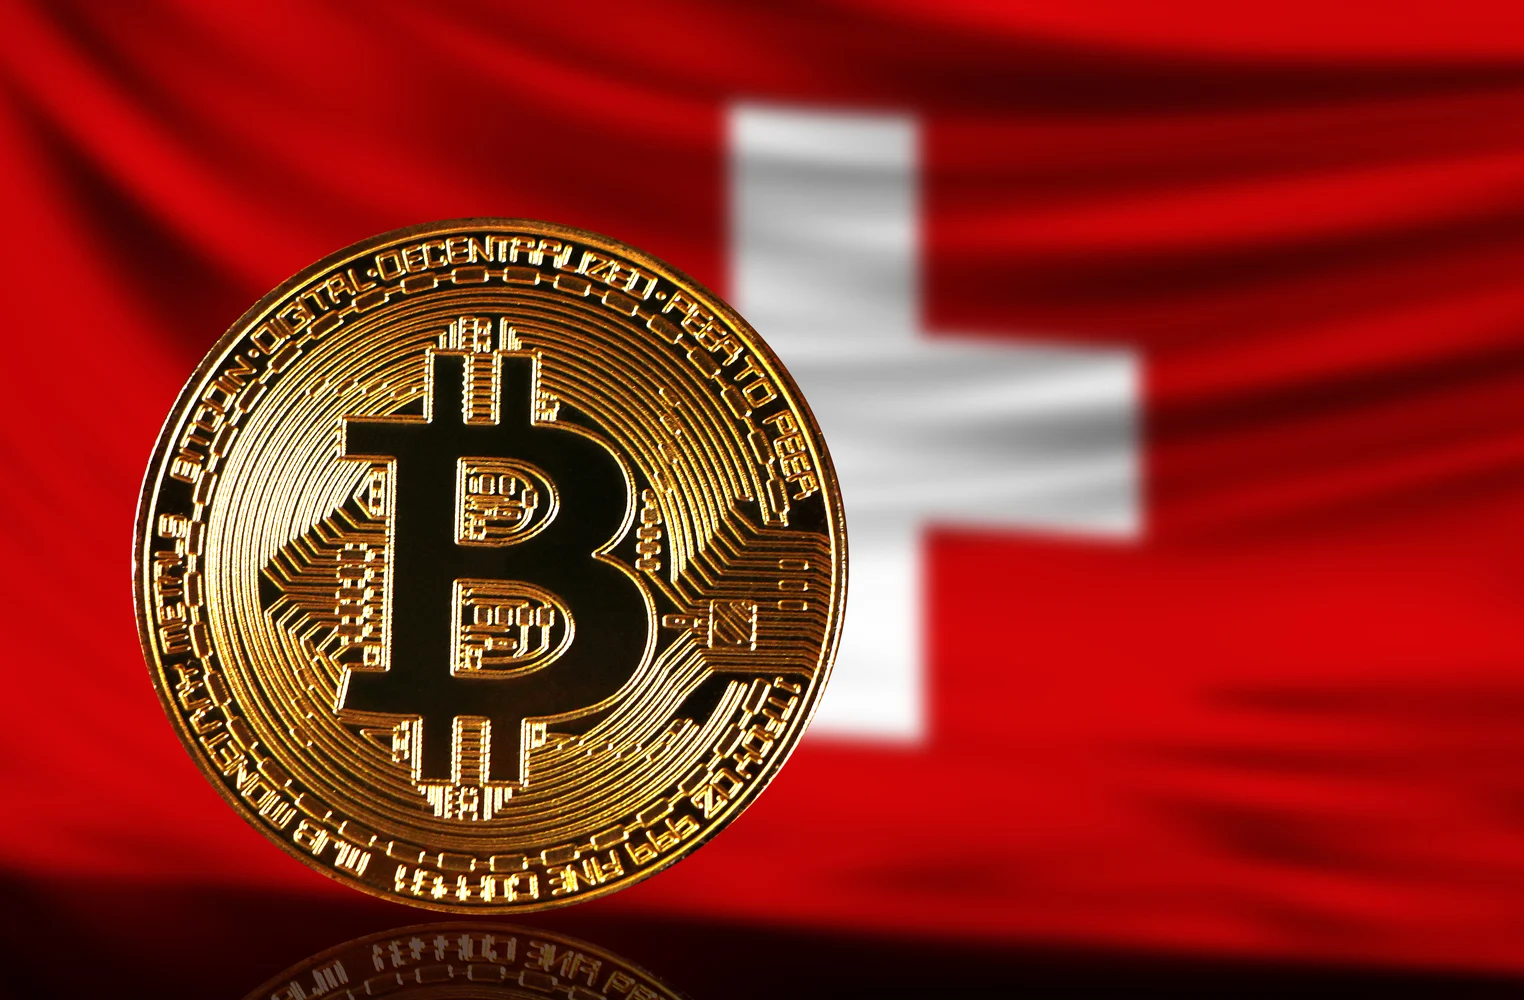 Swiss Bitcoin